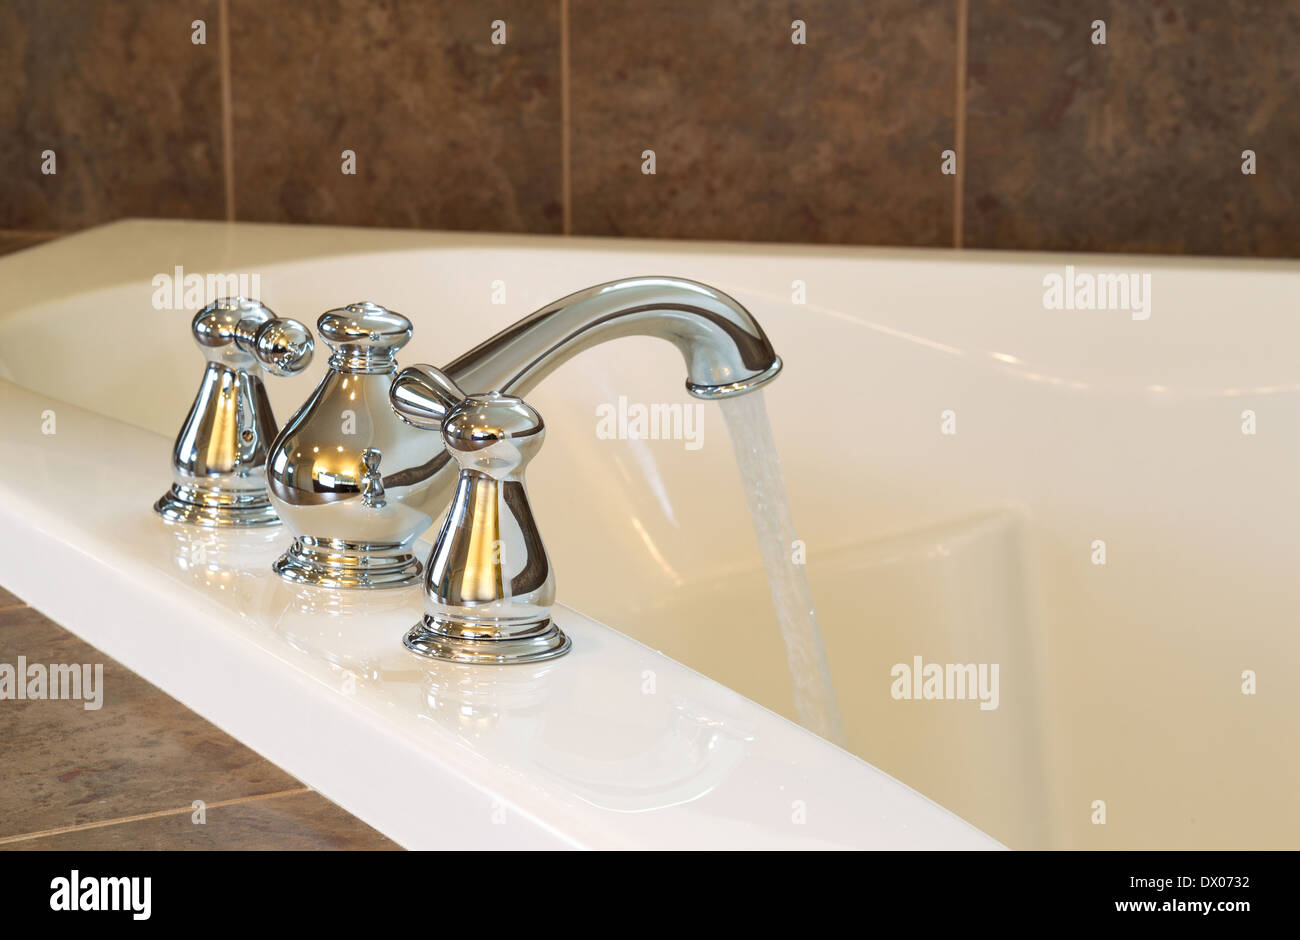 Closeup foto orizzontale del rubinetto cromato in funzione dell'acqua in vasca nella stanza da bagno principale Foto Stock